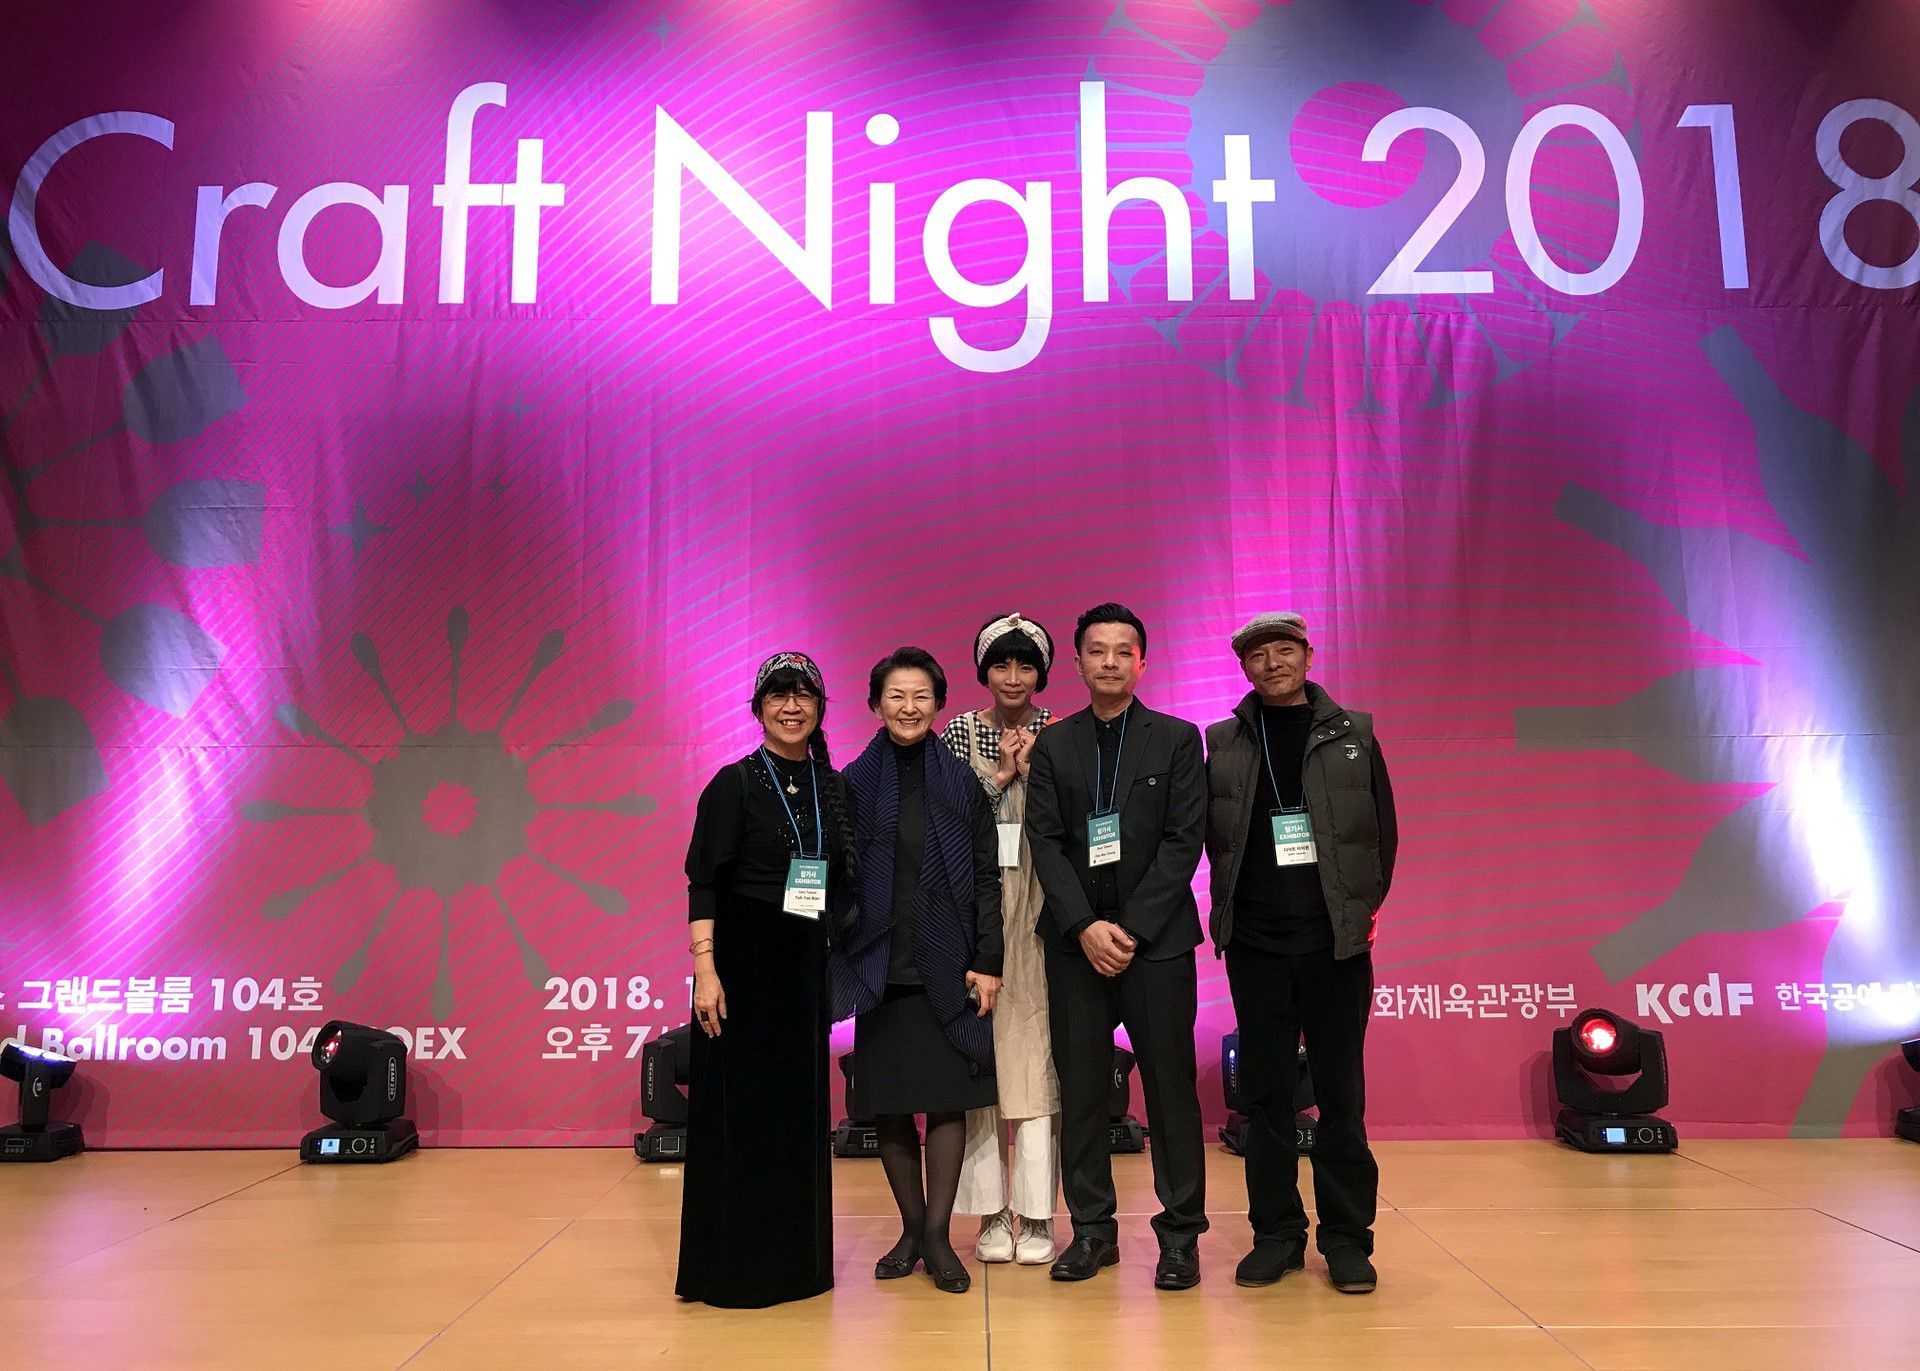 藝創系萬煜瑤教授及三位花蓮參展藝術業者與KCDF韓國工藝協協會主席於歡迎晚會合影